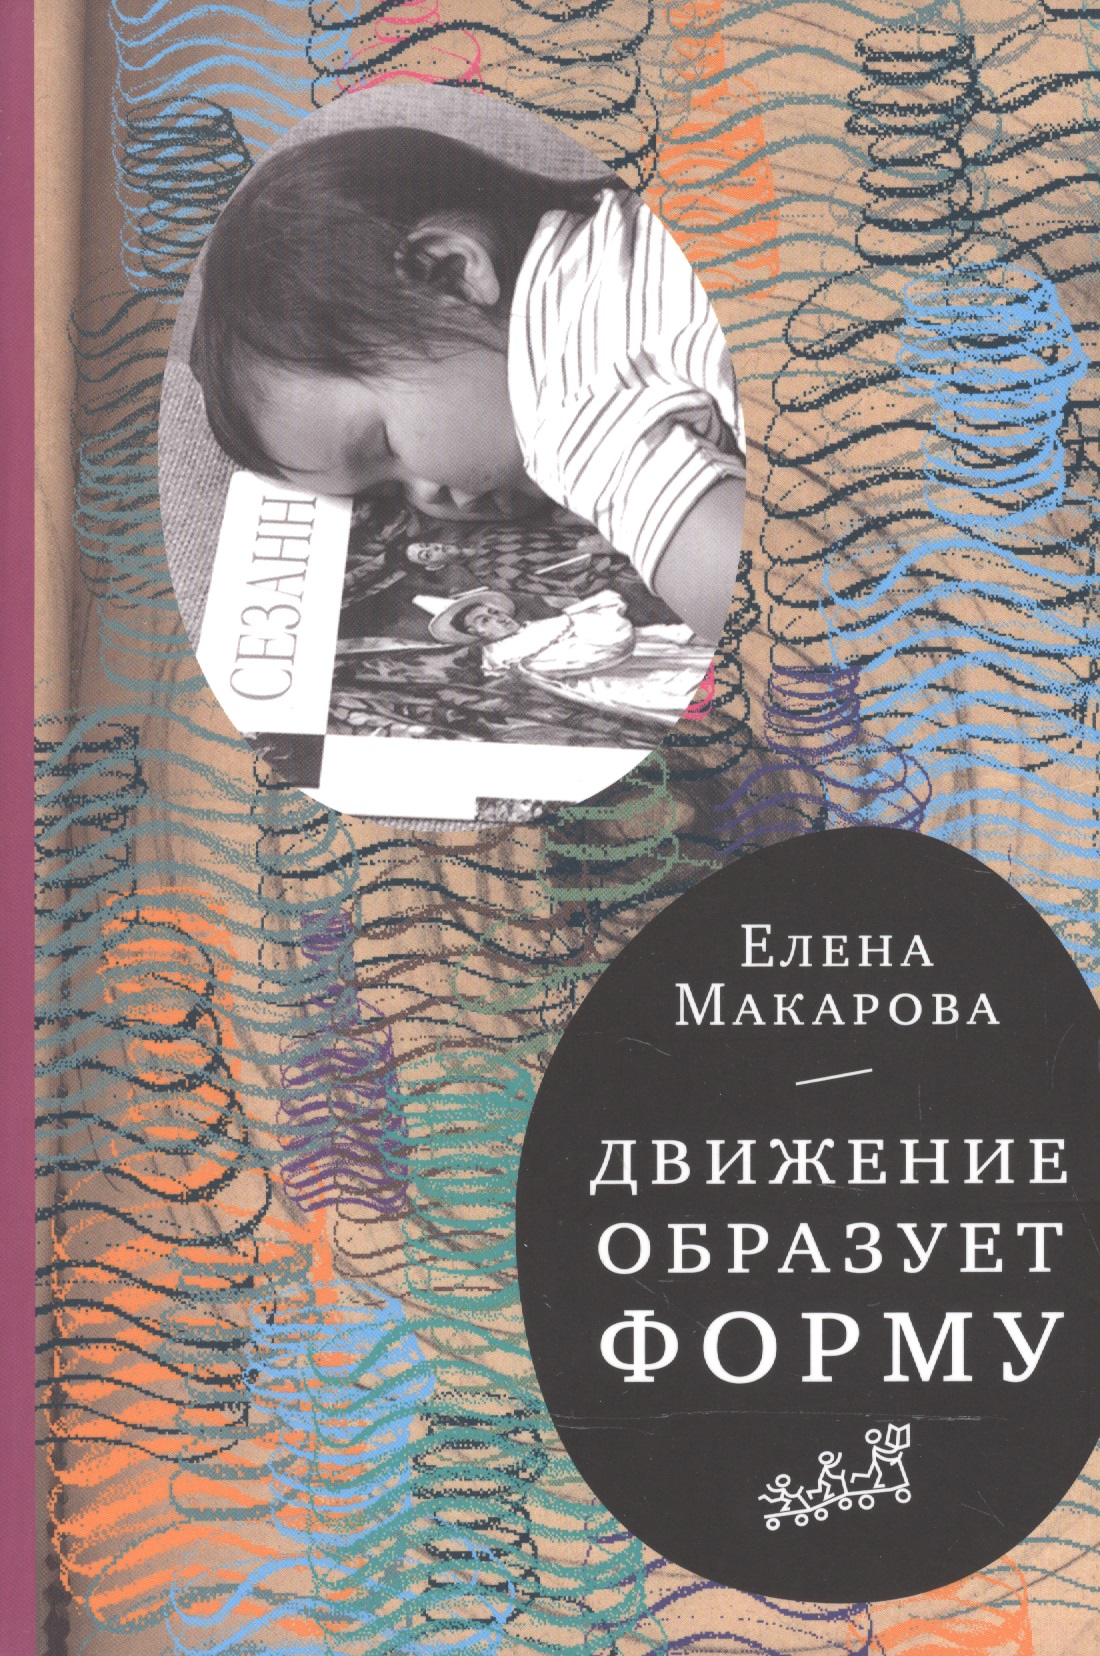 Макарова Елена Григорьевна Движение образует форму (2-е издание) макарова е движение образует форму